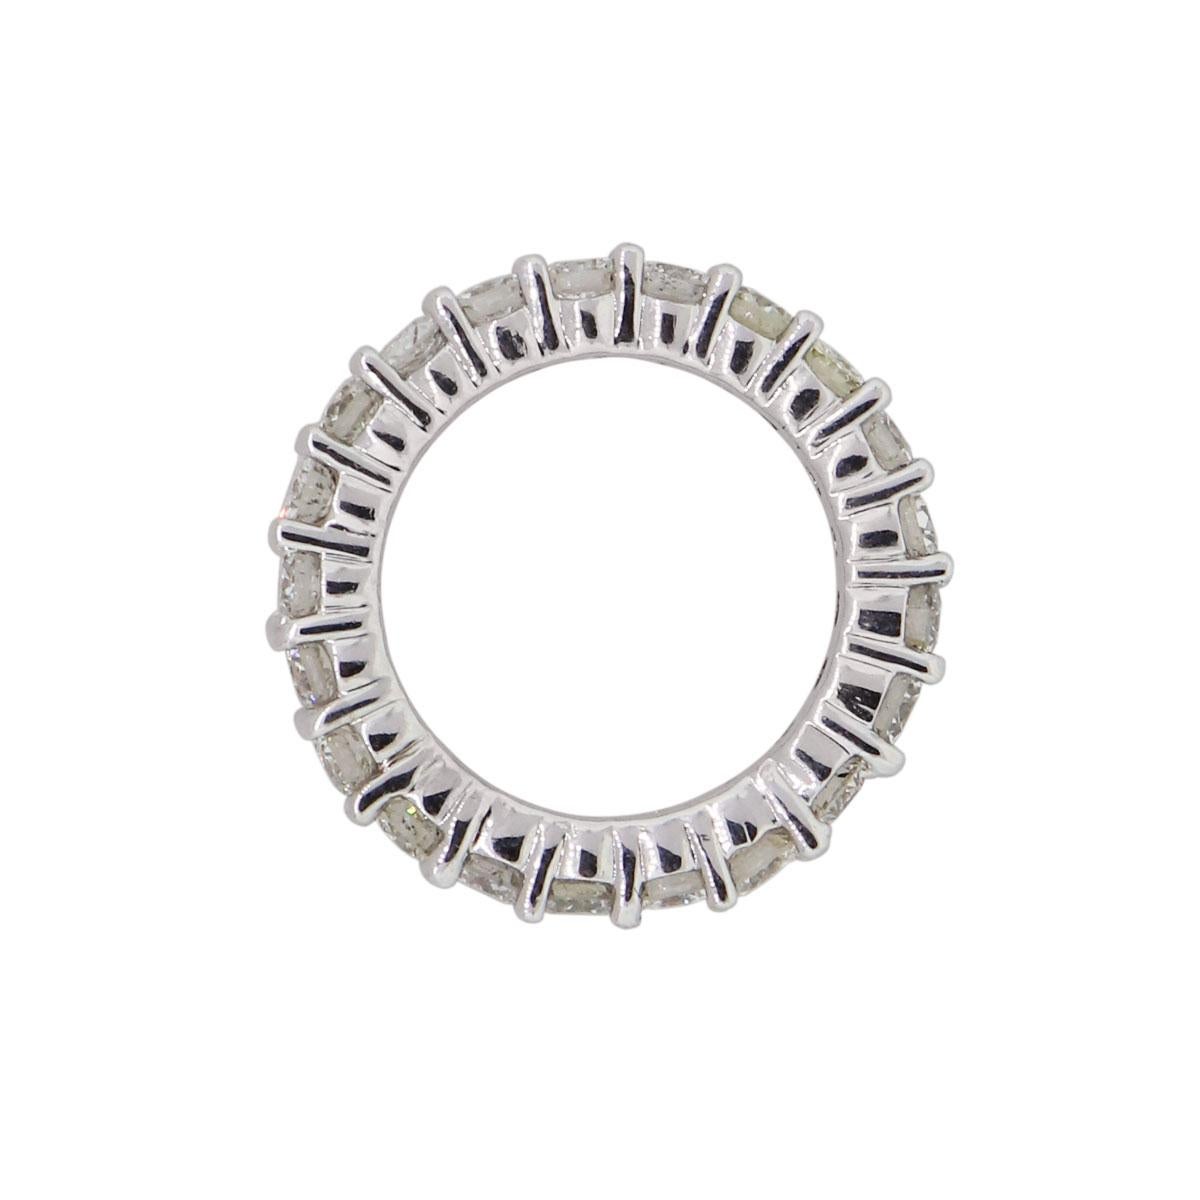 MATERIAL: 14k Weißgold
Diamant-Details: Ca. 2,25ctw Diamanten im Rundschliff. Die Diamanten haben eine Farbe von G/H und eine Reinheit von VS.
Ringgröße: 4.75
Ring-Maße: 0.91″ x 0.12″ x 0.91″
Gesamtgewicht: 4,7g (3dwt)
Zusätzliche Details: Dieser